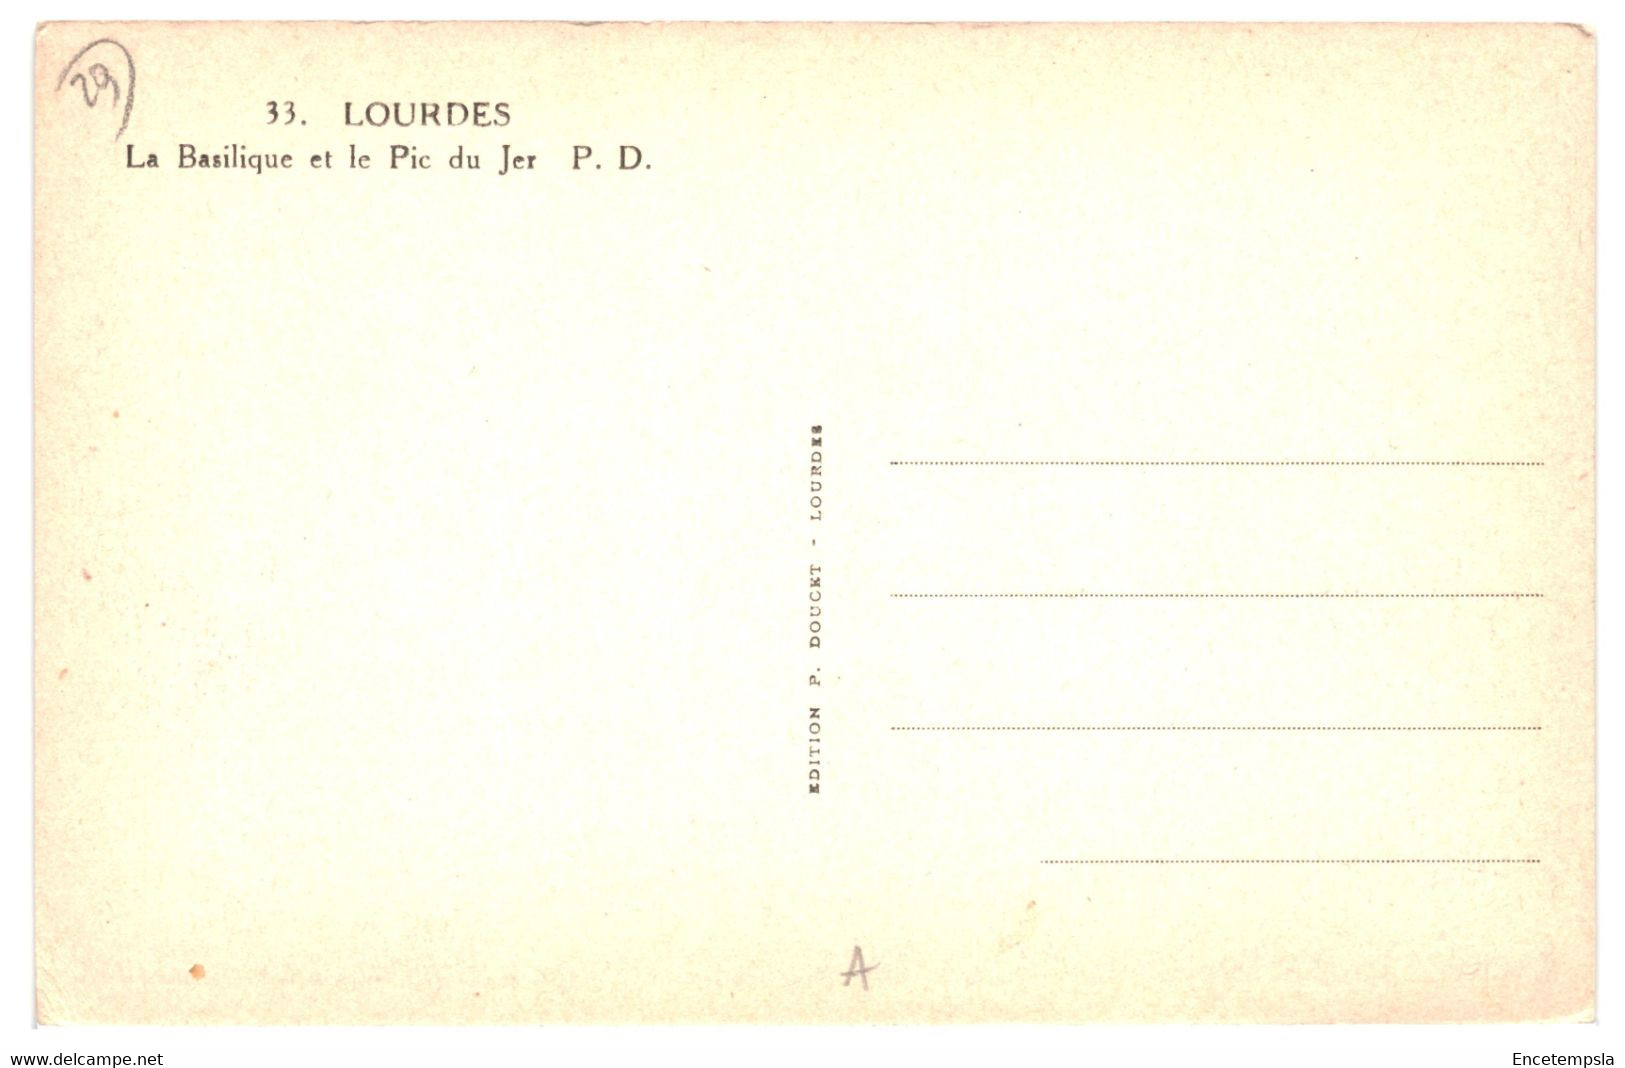 CPA - Carte postale - Lot de 50 cartes postales de France Lourdes  -VMLOUD1